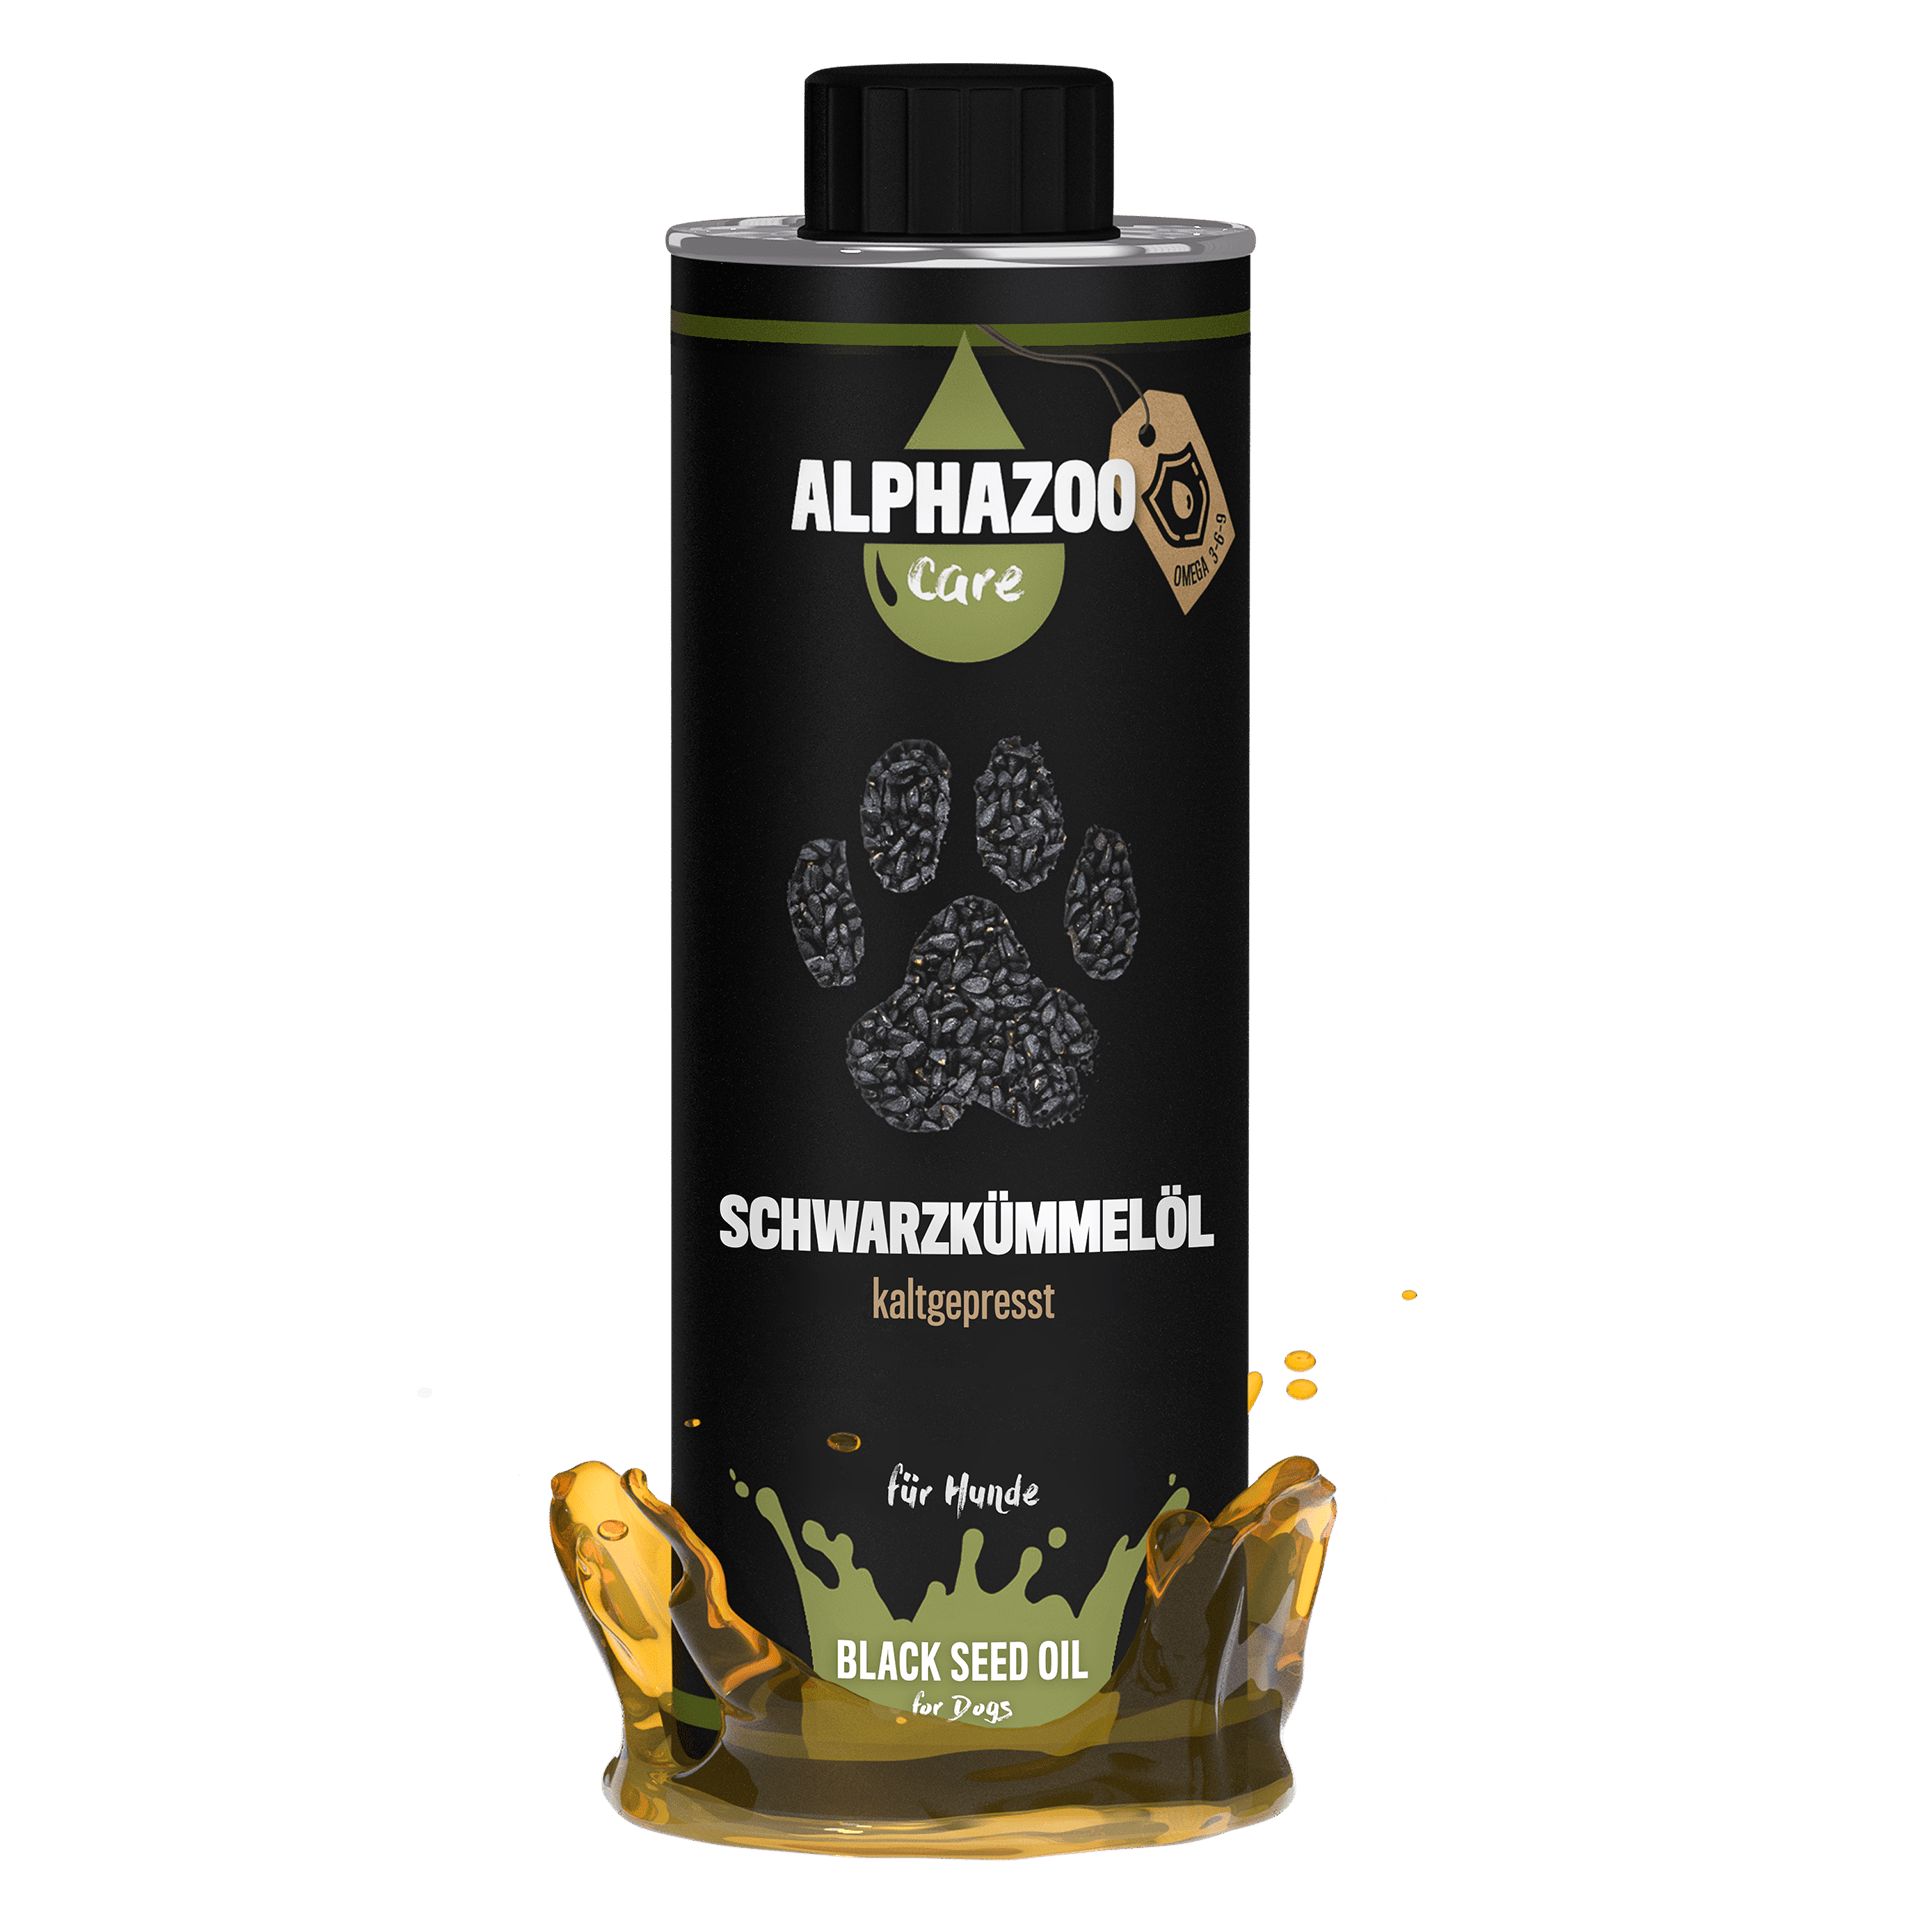 Alphazoo Premium Schwarzkümmelöl für Hunde